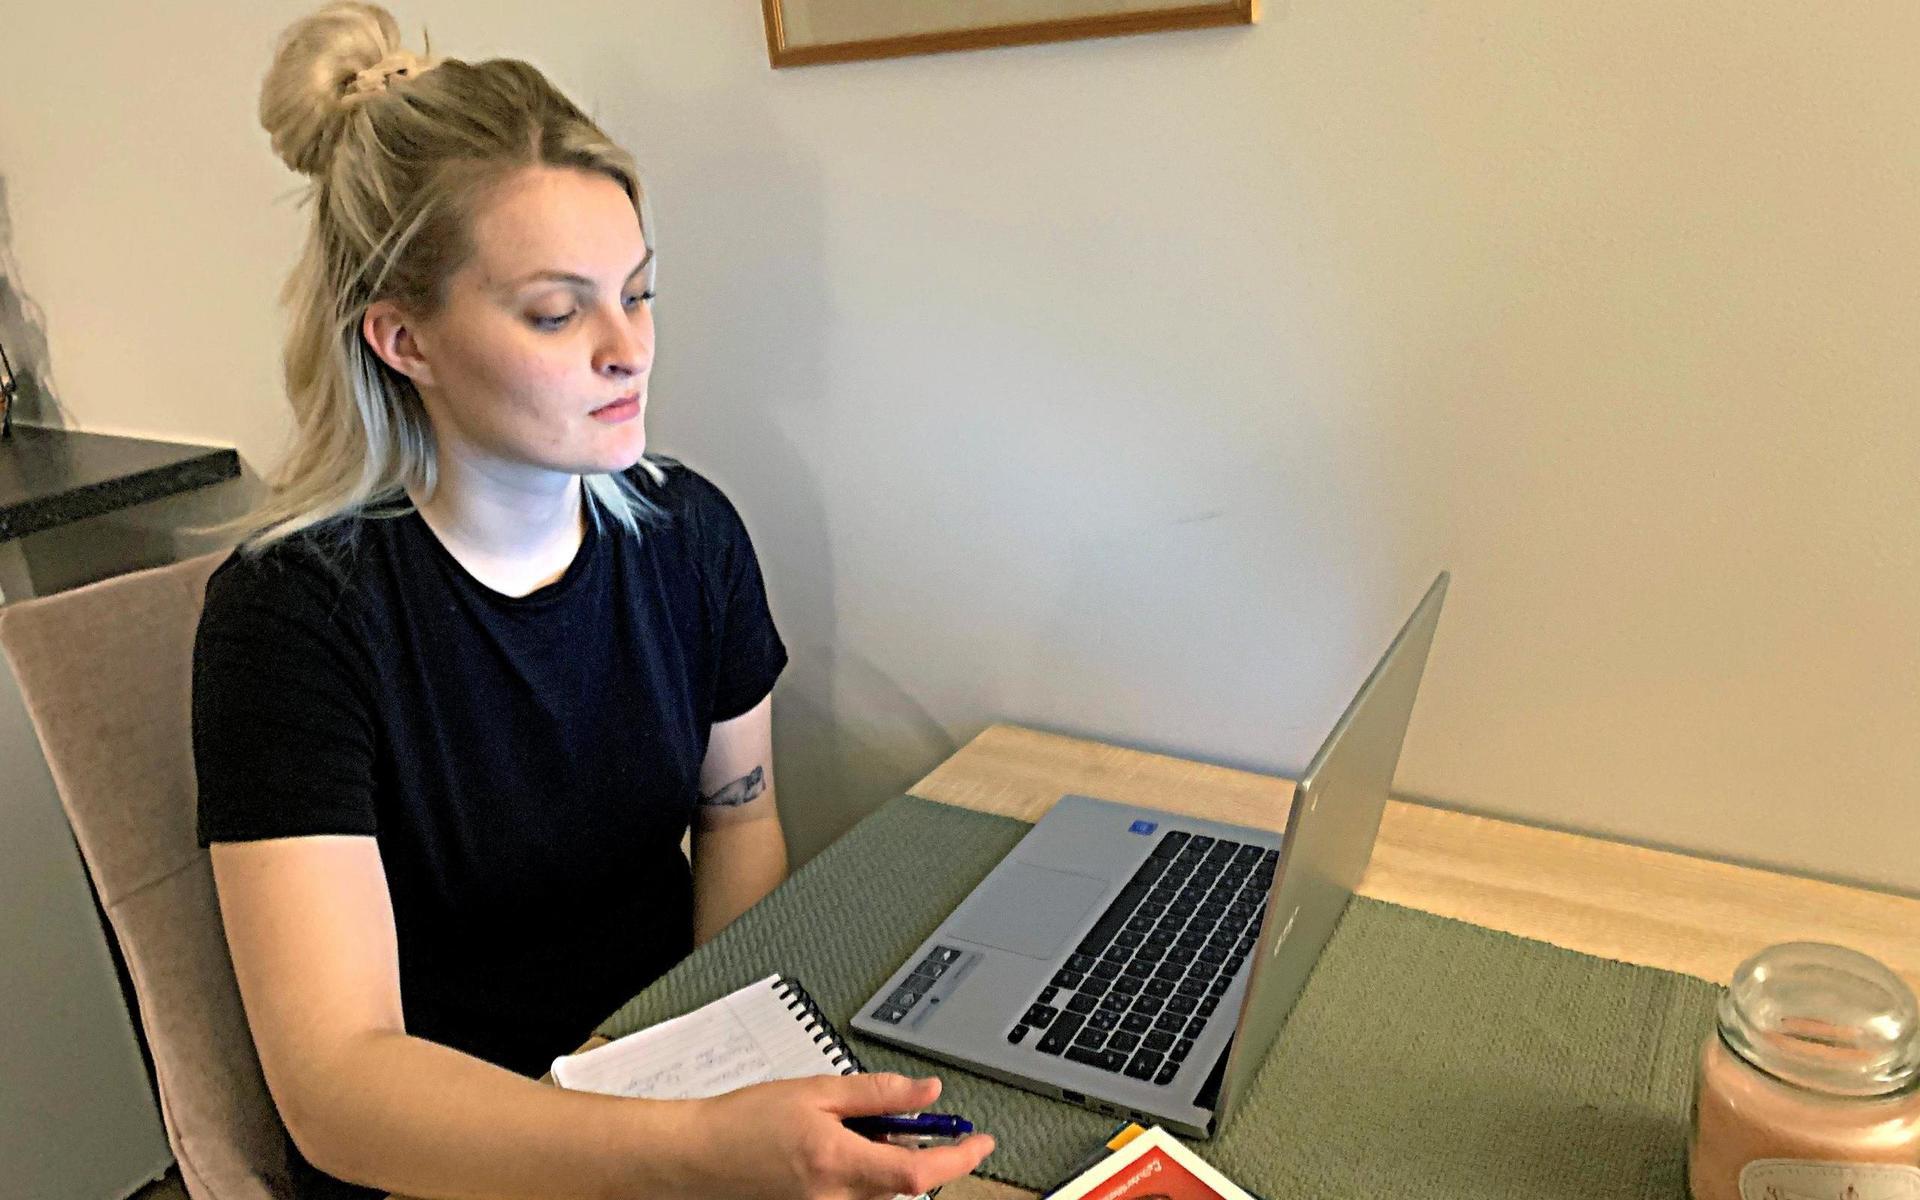 Högskolestudenten Gabija Alisauskaite Nygren oroas för att skriva salstentor under rådande pandemi.